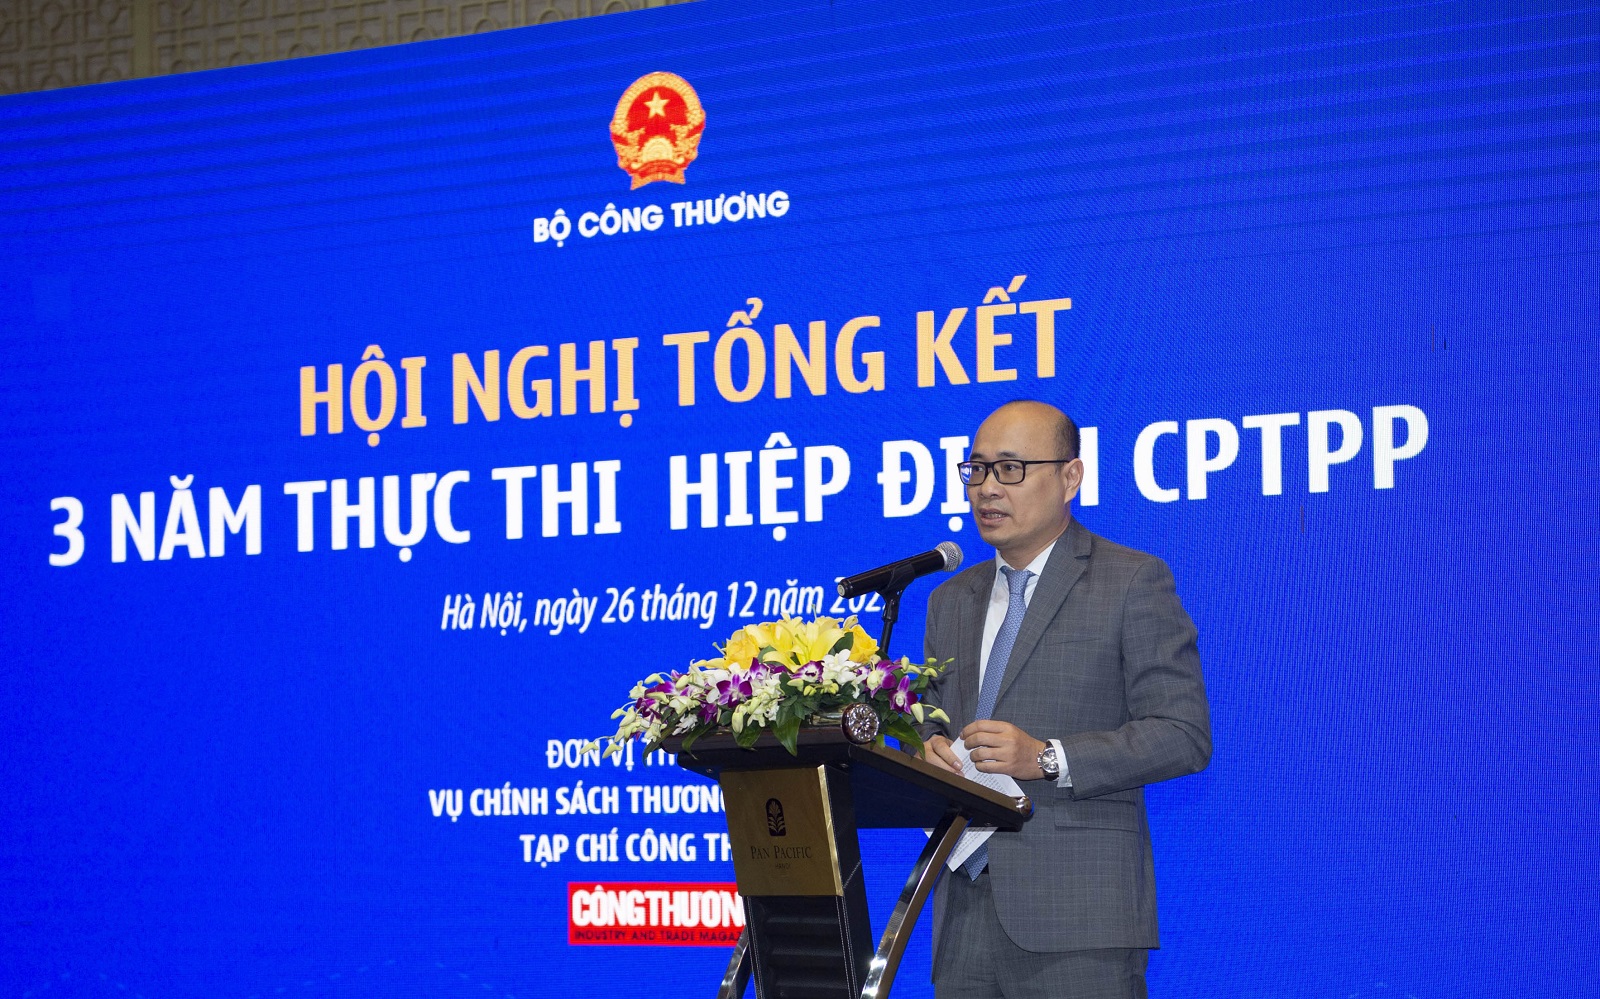 3 năm thực thi CPTPP, vị thế Việt Nam ngày càng được khẳng định